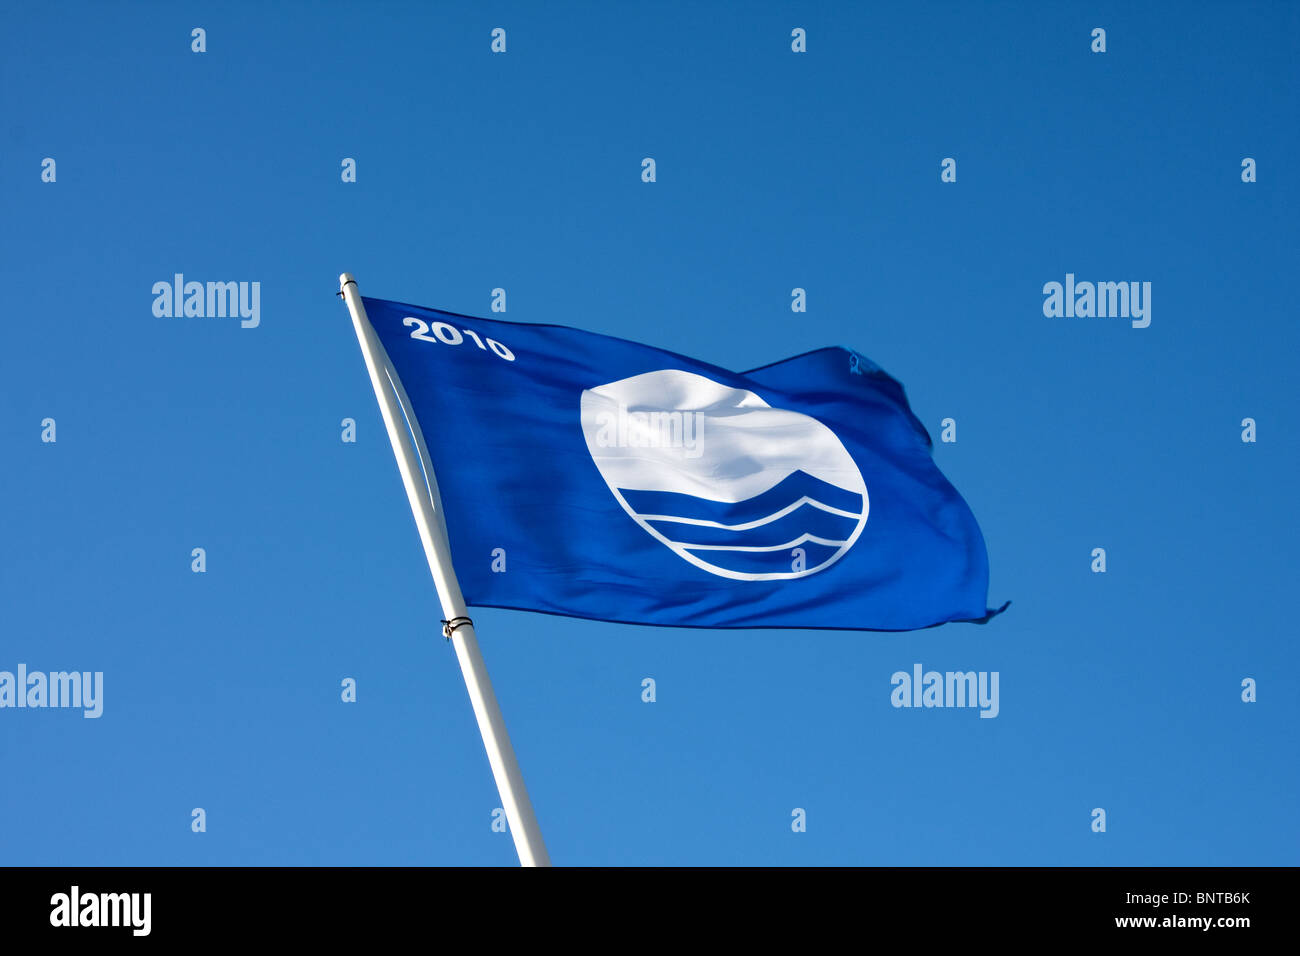 2010 Bandiera Blu aggiudicato alla riunione di spiaggia in acqua e in spiaggia i criteri di pulizia Foto Stock